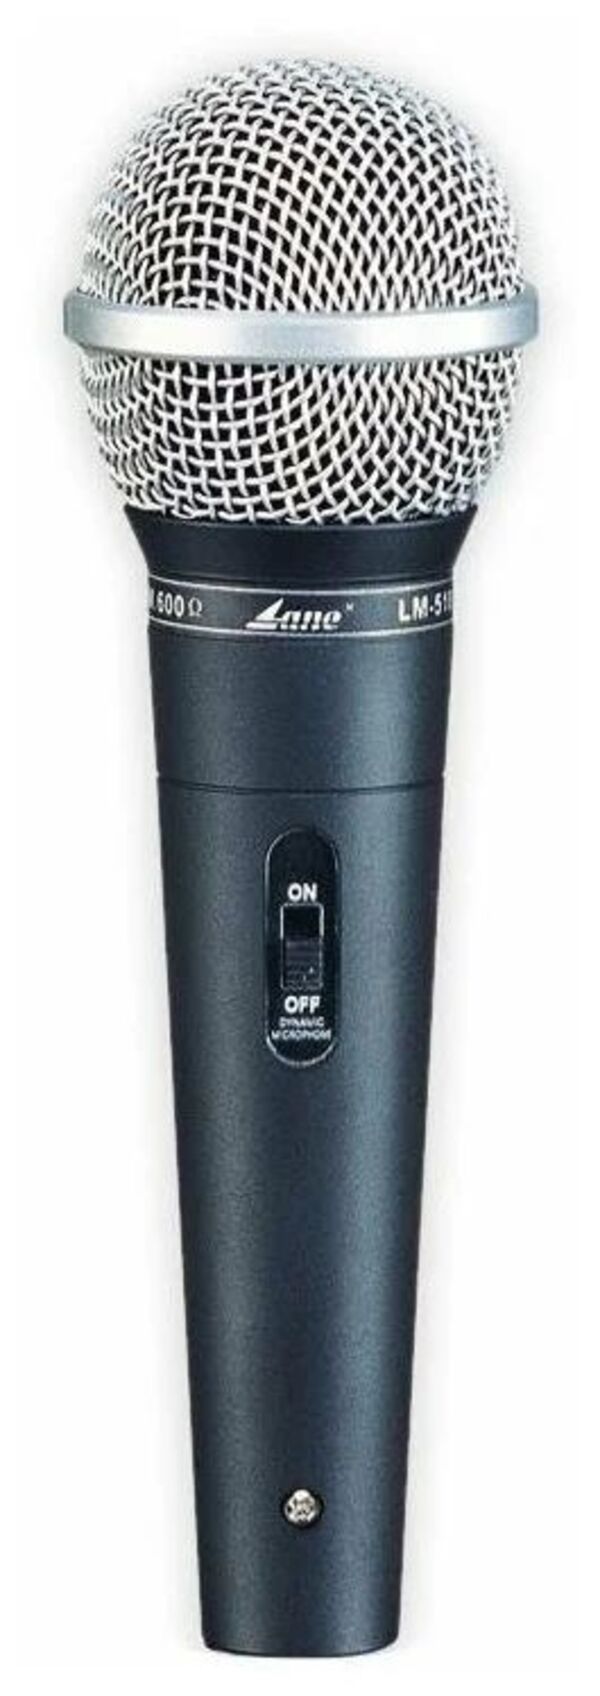 Lane Lm-510 - микрофон вокальный динамический